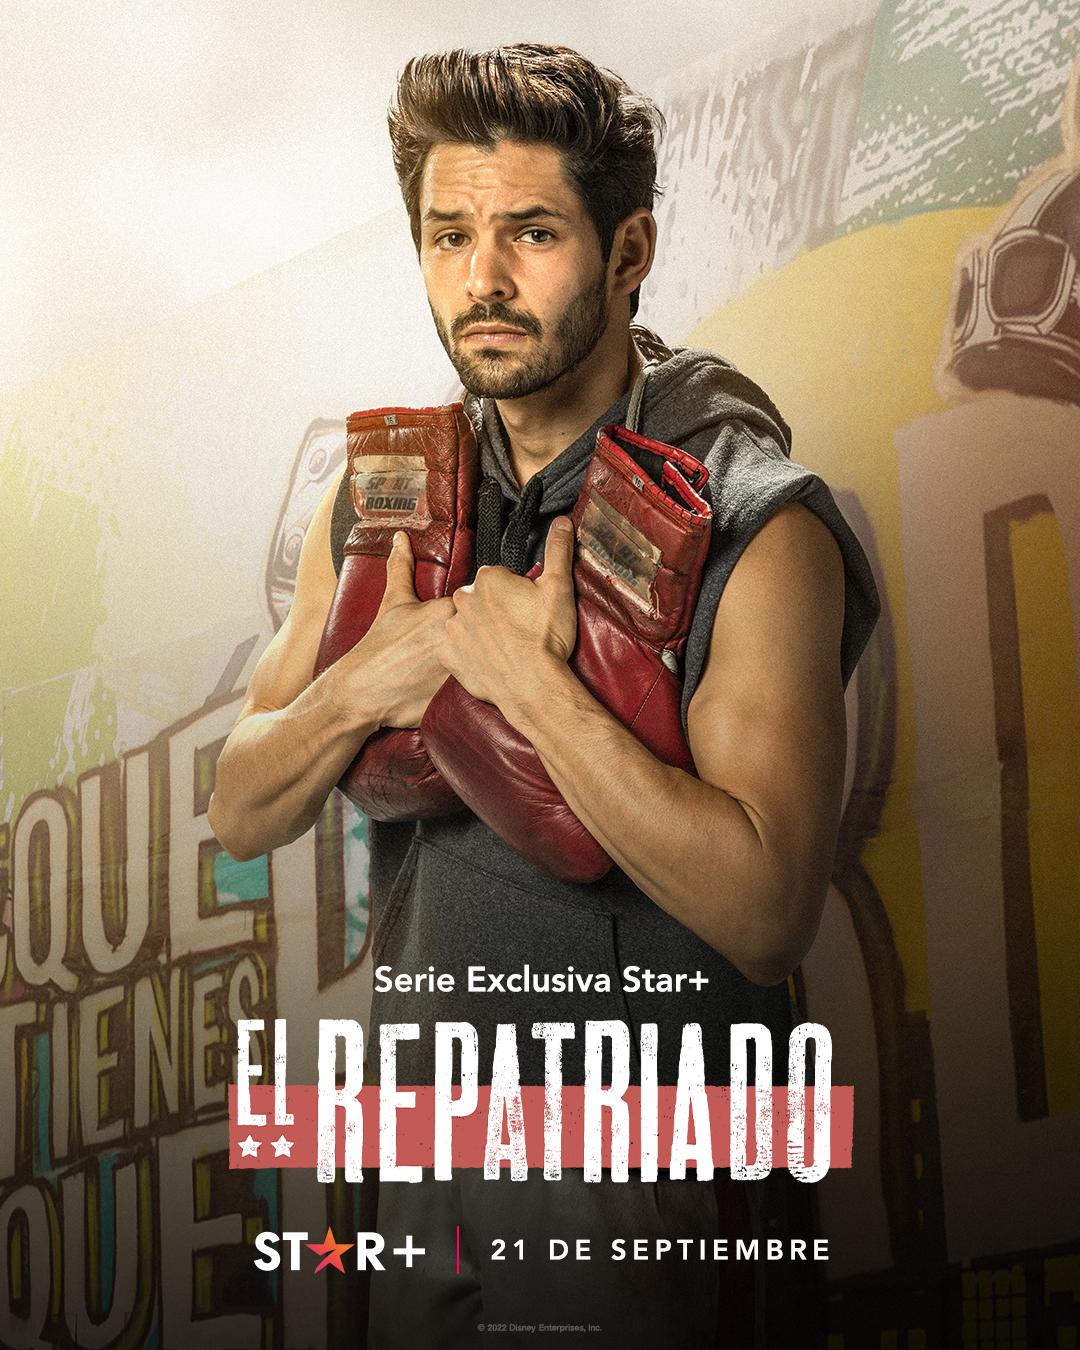 TV ratings for Repatriated (El Repatriado) in Spain. Star+ TV series